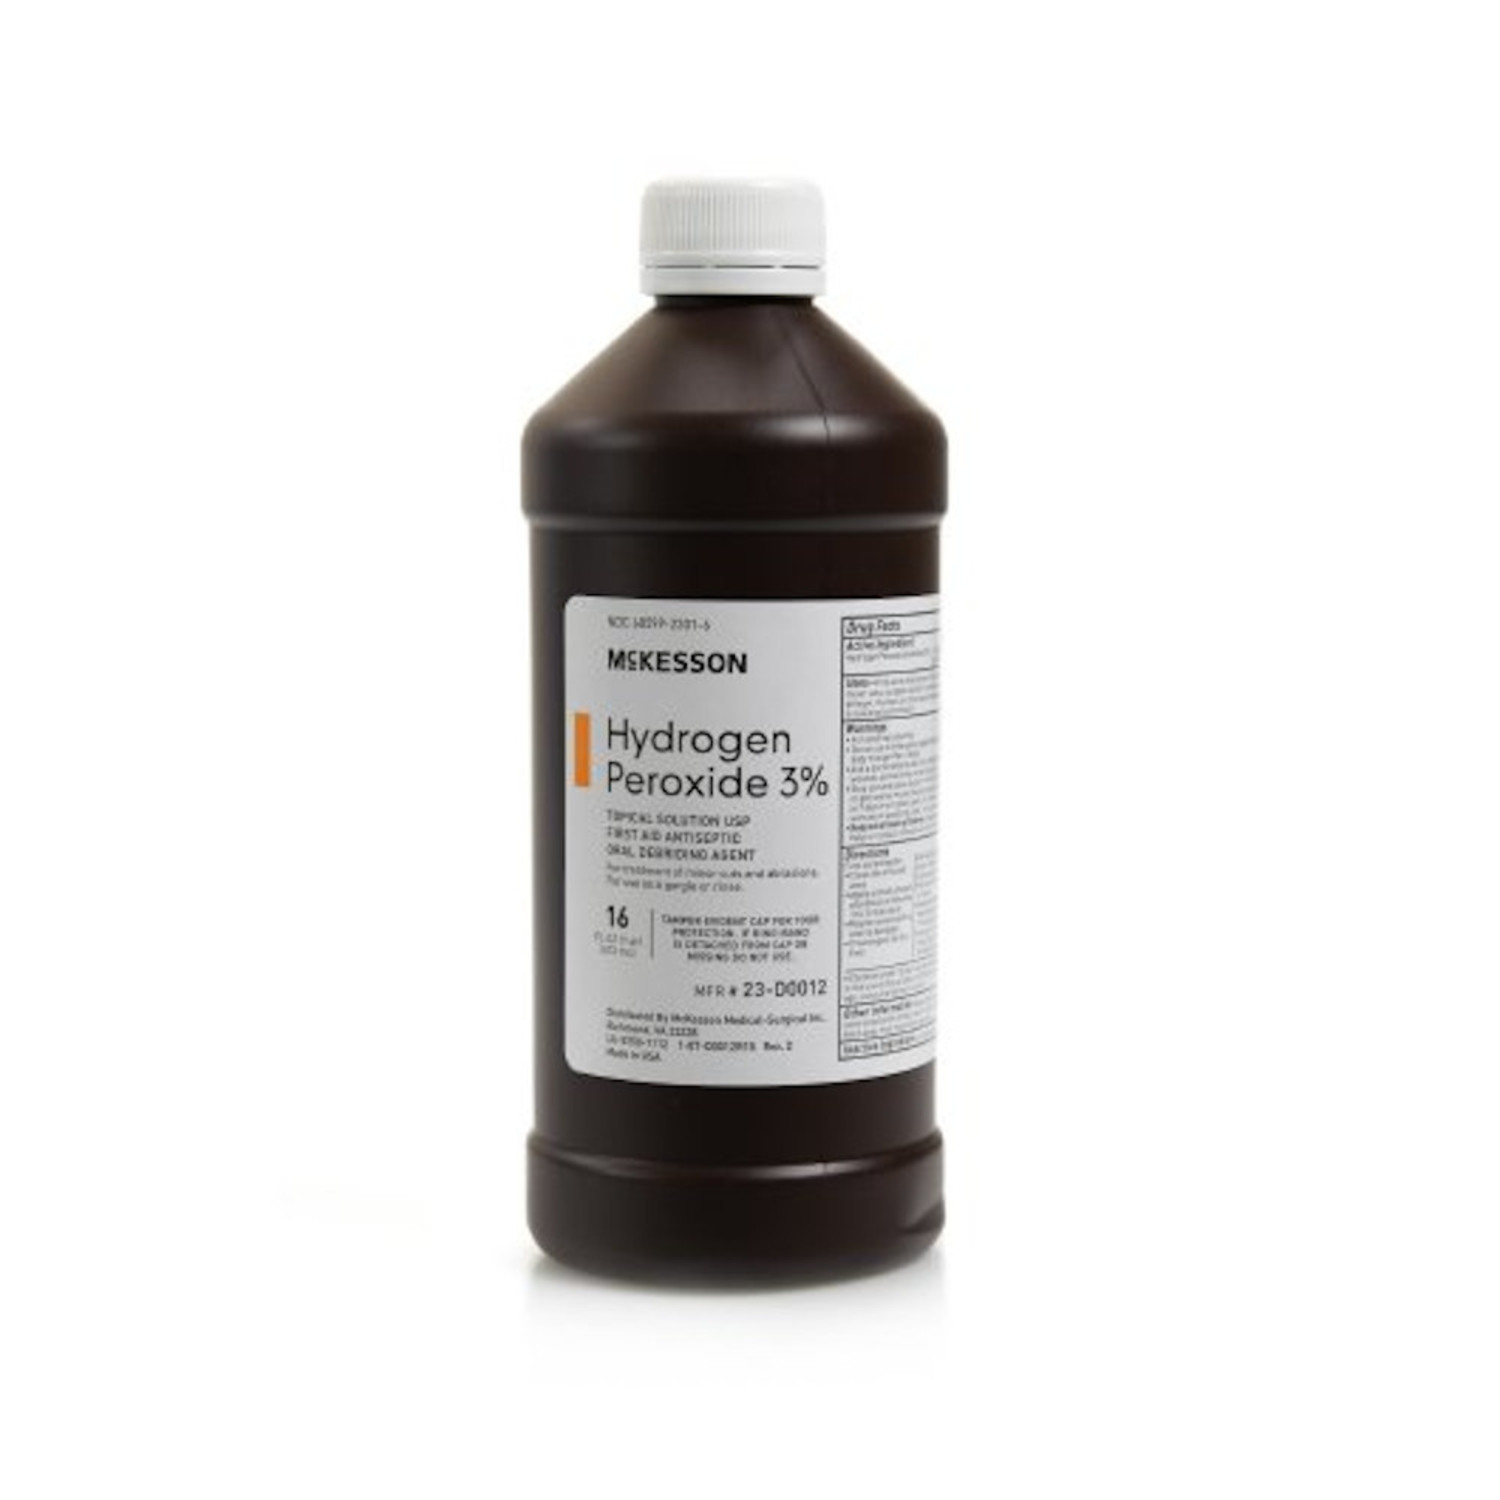 McKesson Hydrogen Peroxide 3% First Aid Antiseptic - 16 fl oz